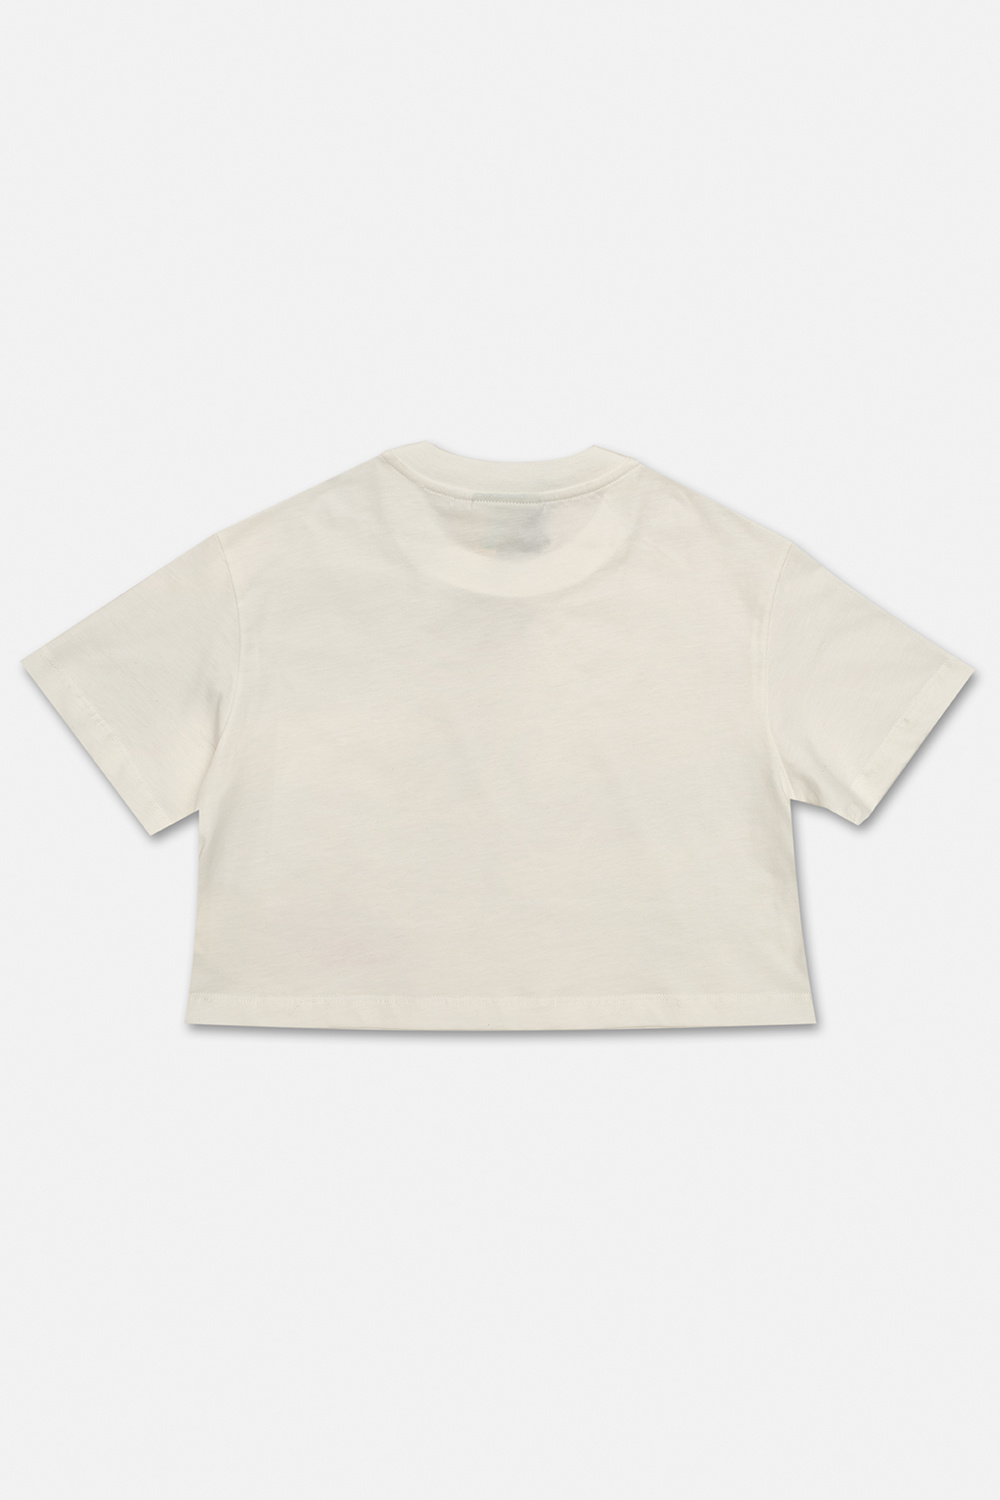 fendi Blazer Kids Cropped T-shirt